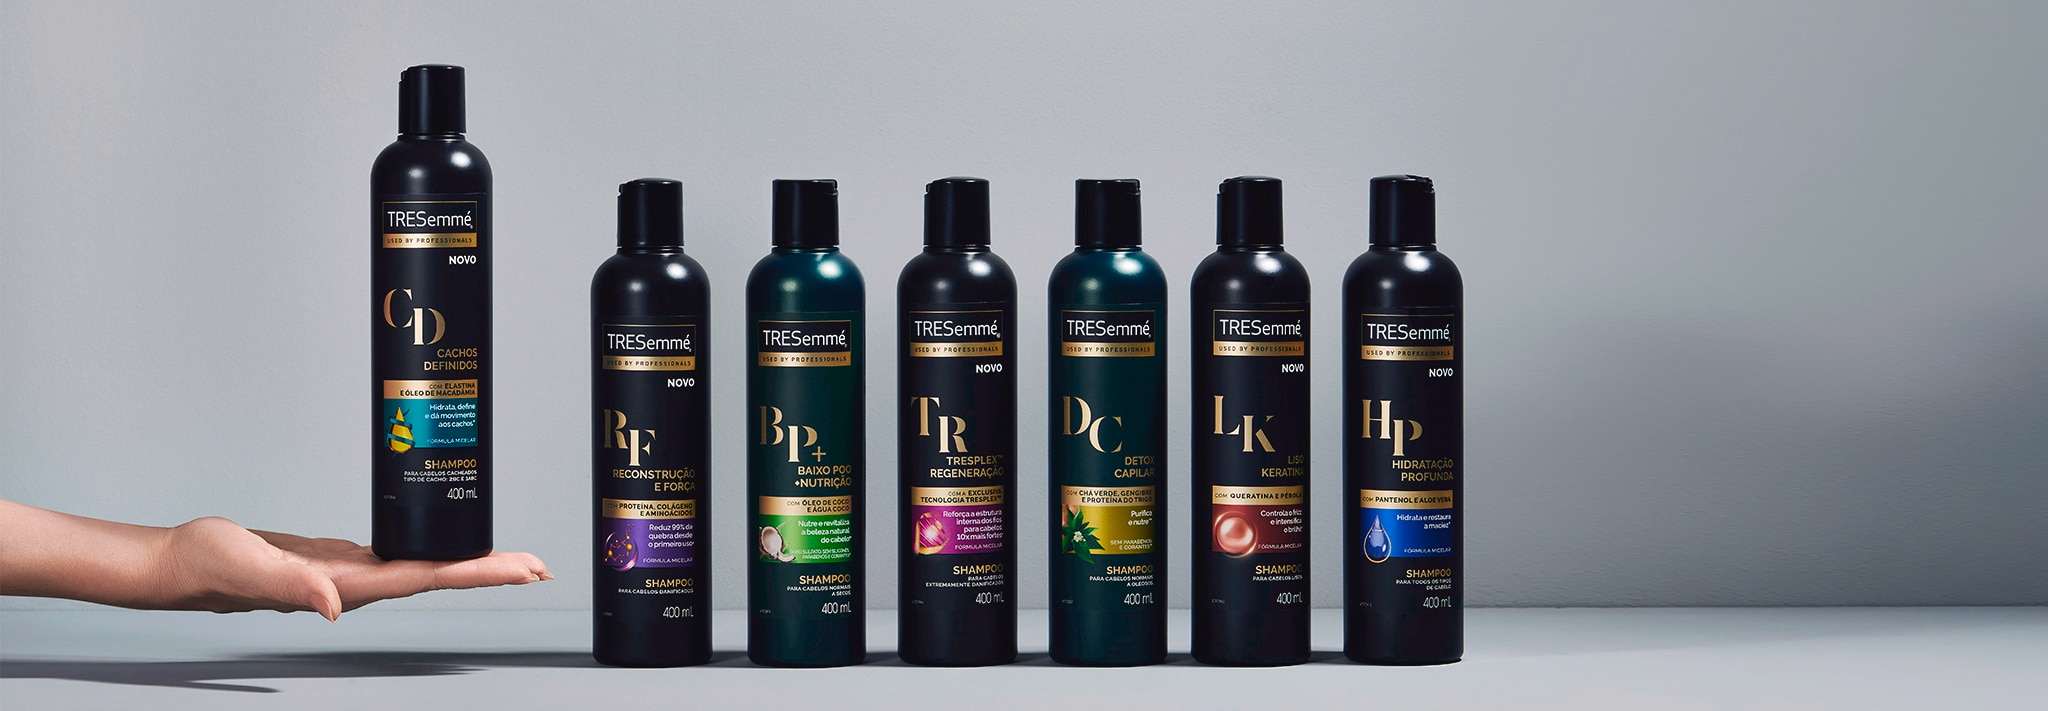 Sete embalagens variadas de shampoo, inclusive uma que está em cima de uma mão estendida à esquerda